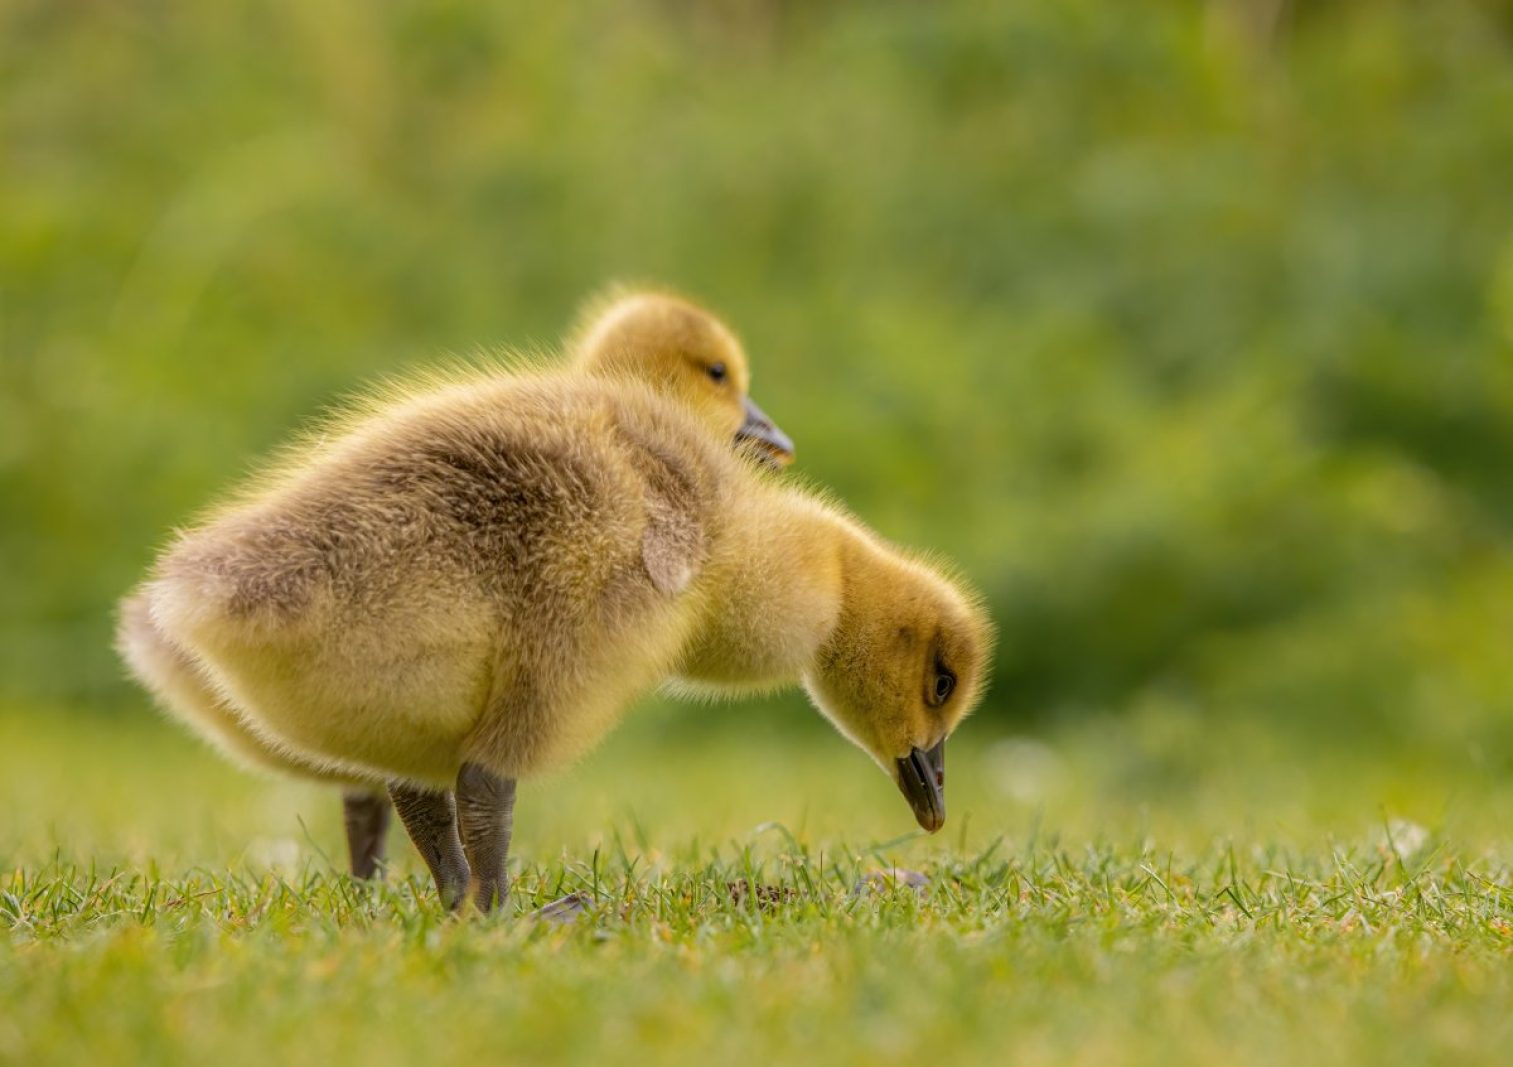 geese, goslings, birds